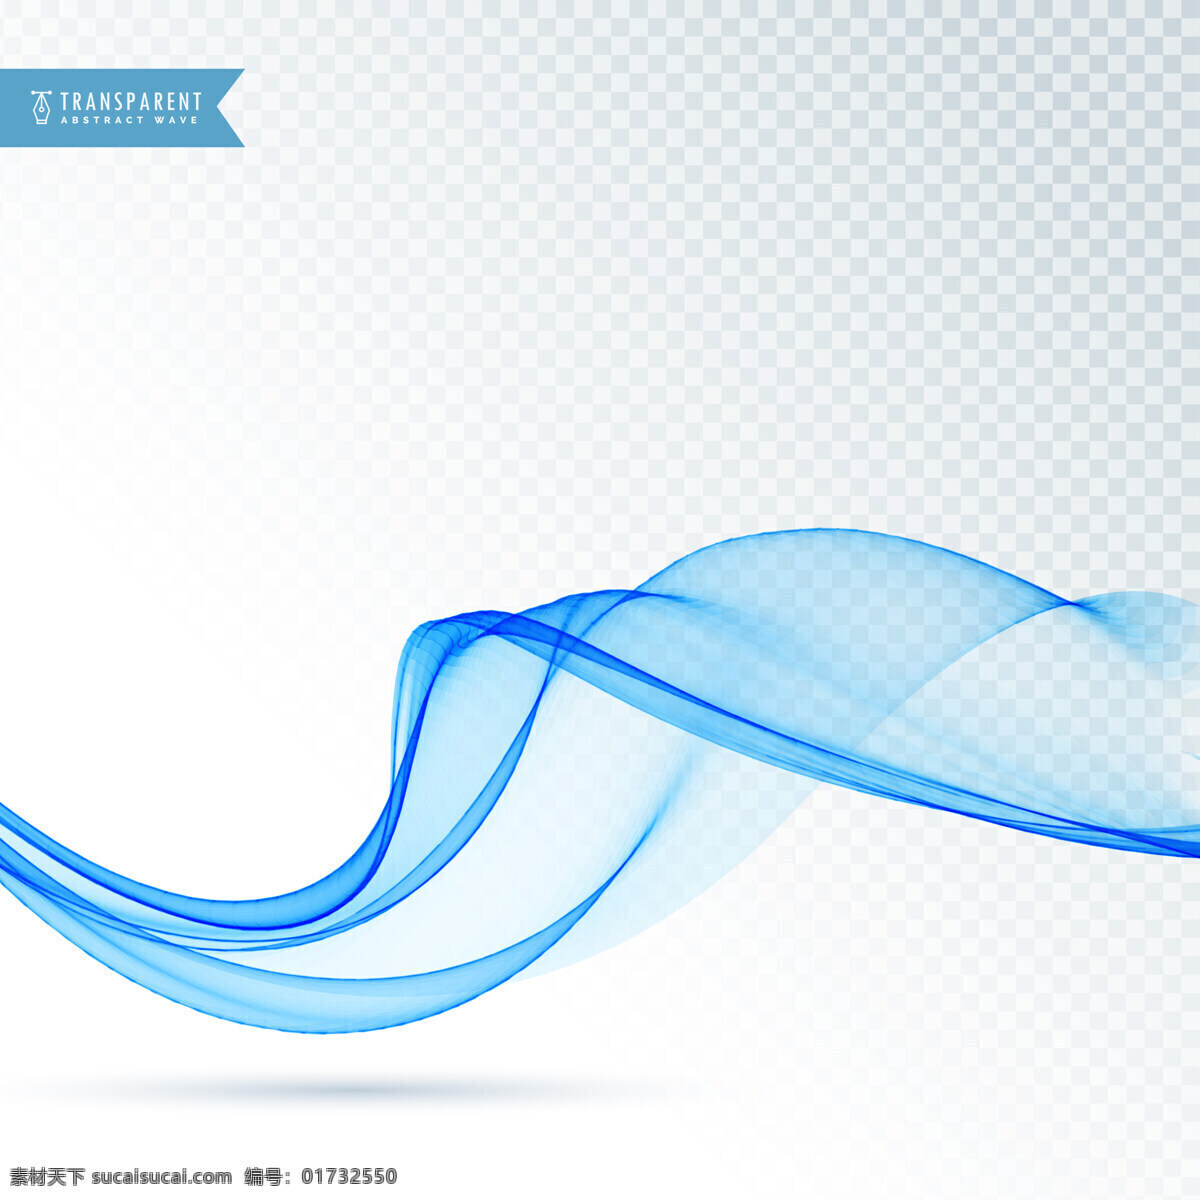 碧波浮动 背景 商业 抽象 线条 波浪 蓝色 形状 烟雾 优雅 能量 漩涡 现代 效果 透明 抽象的形状 运动 柔软 动态